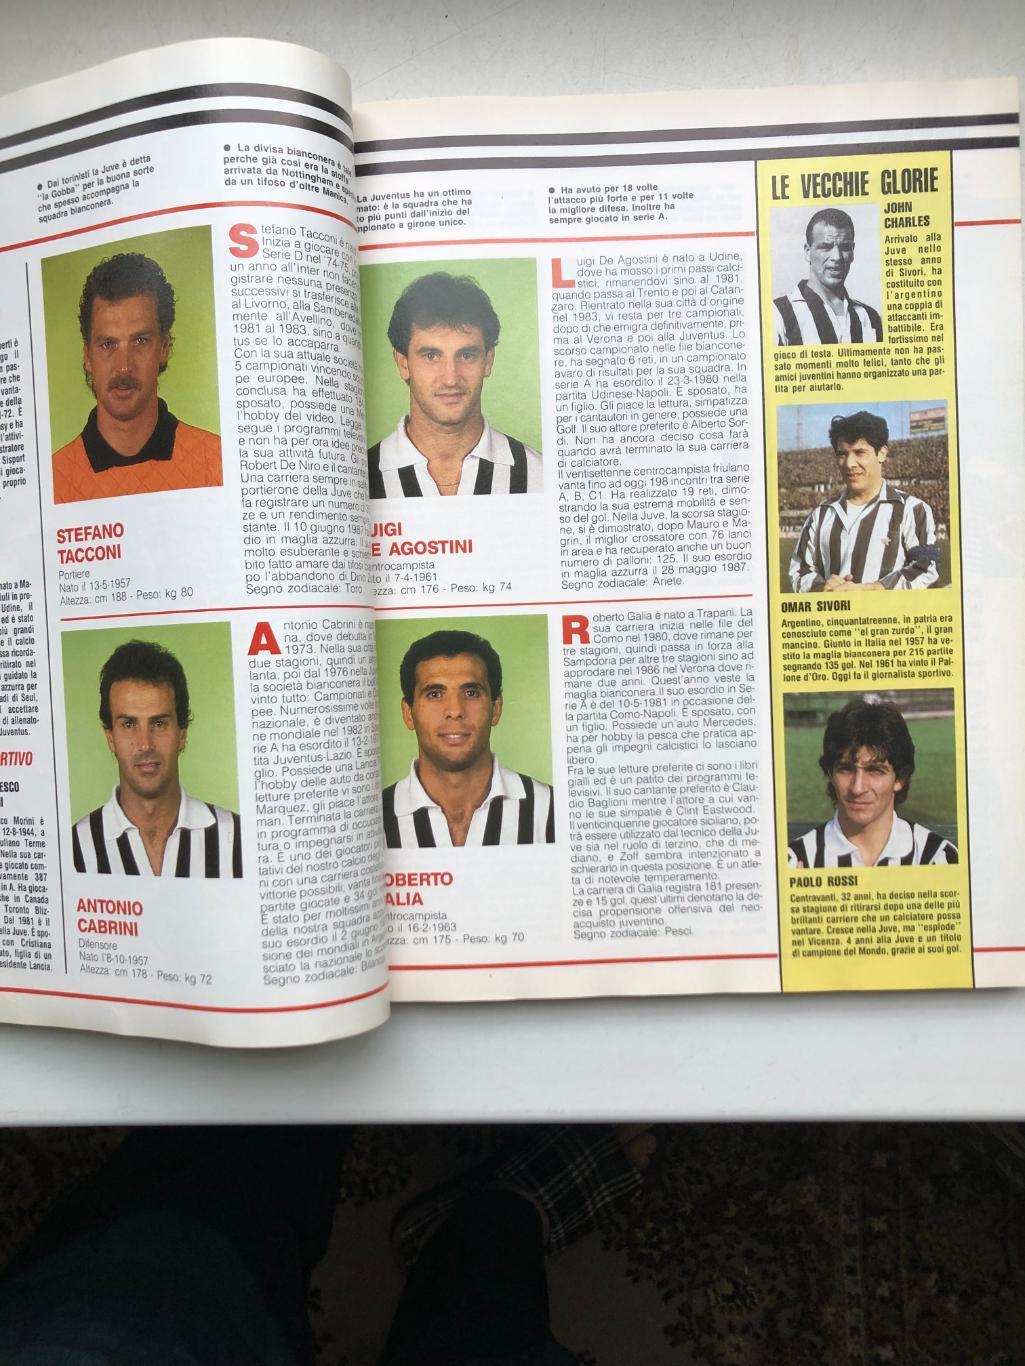 Италия ABC del CALCIO 1988/89 Все три дивизиона, фото команд и игроков, 322 стр. 2